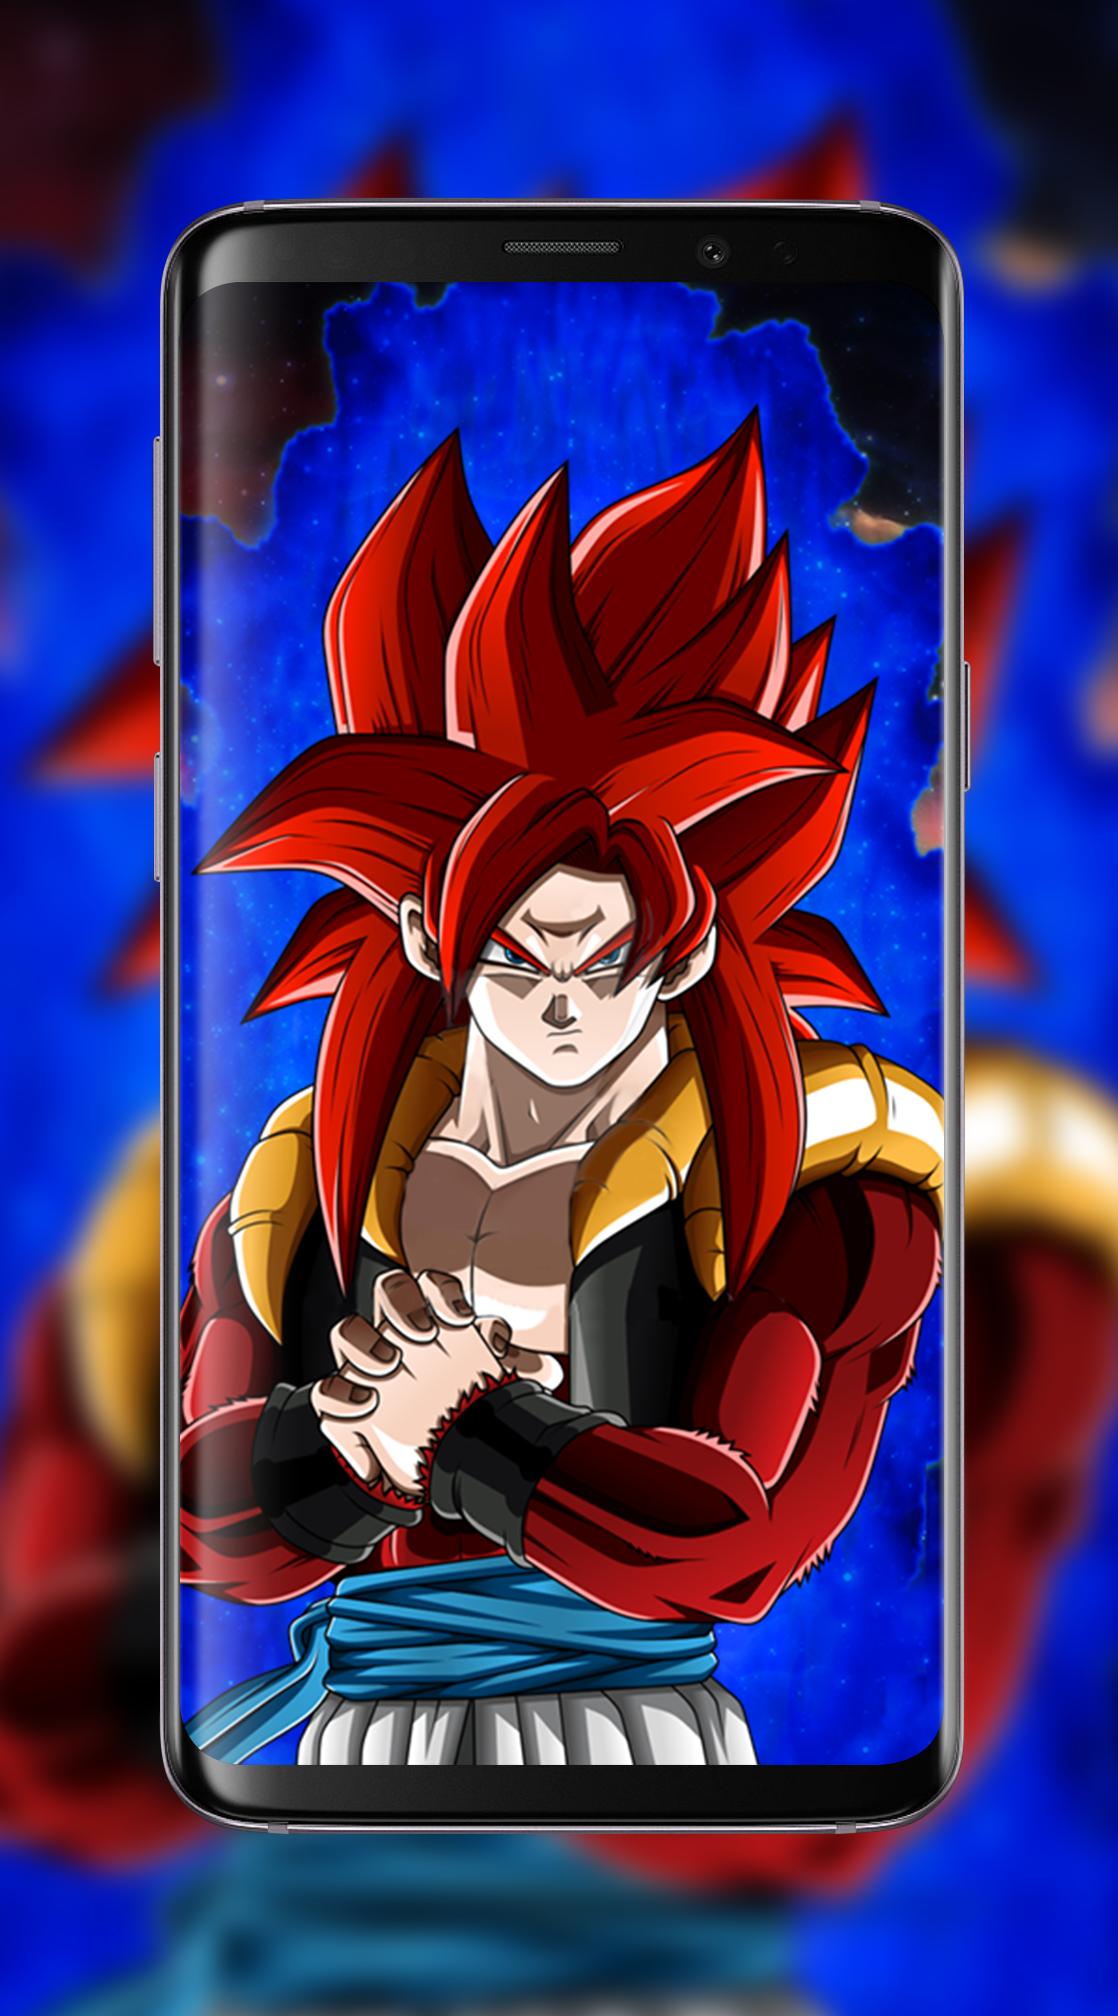 Goku Ssj4 Wallpaper Hd For Android Apk Download - gogeta ssj4 roblox